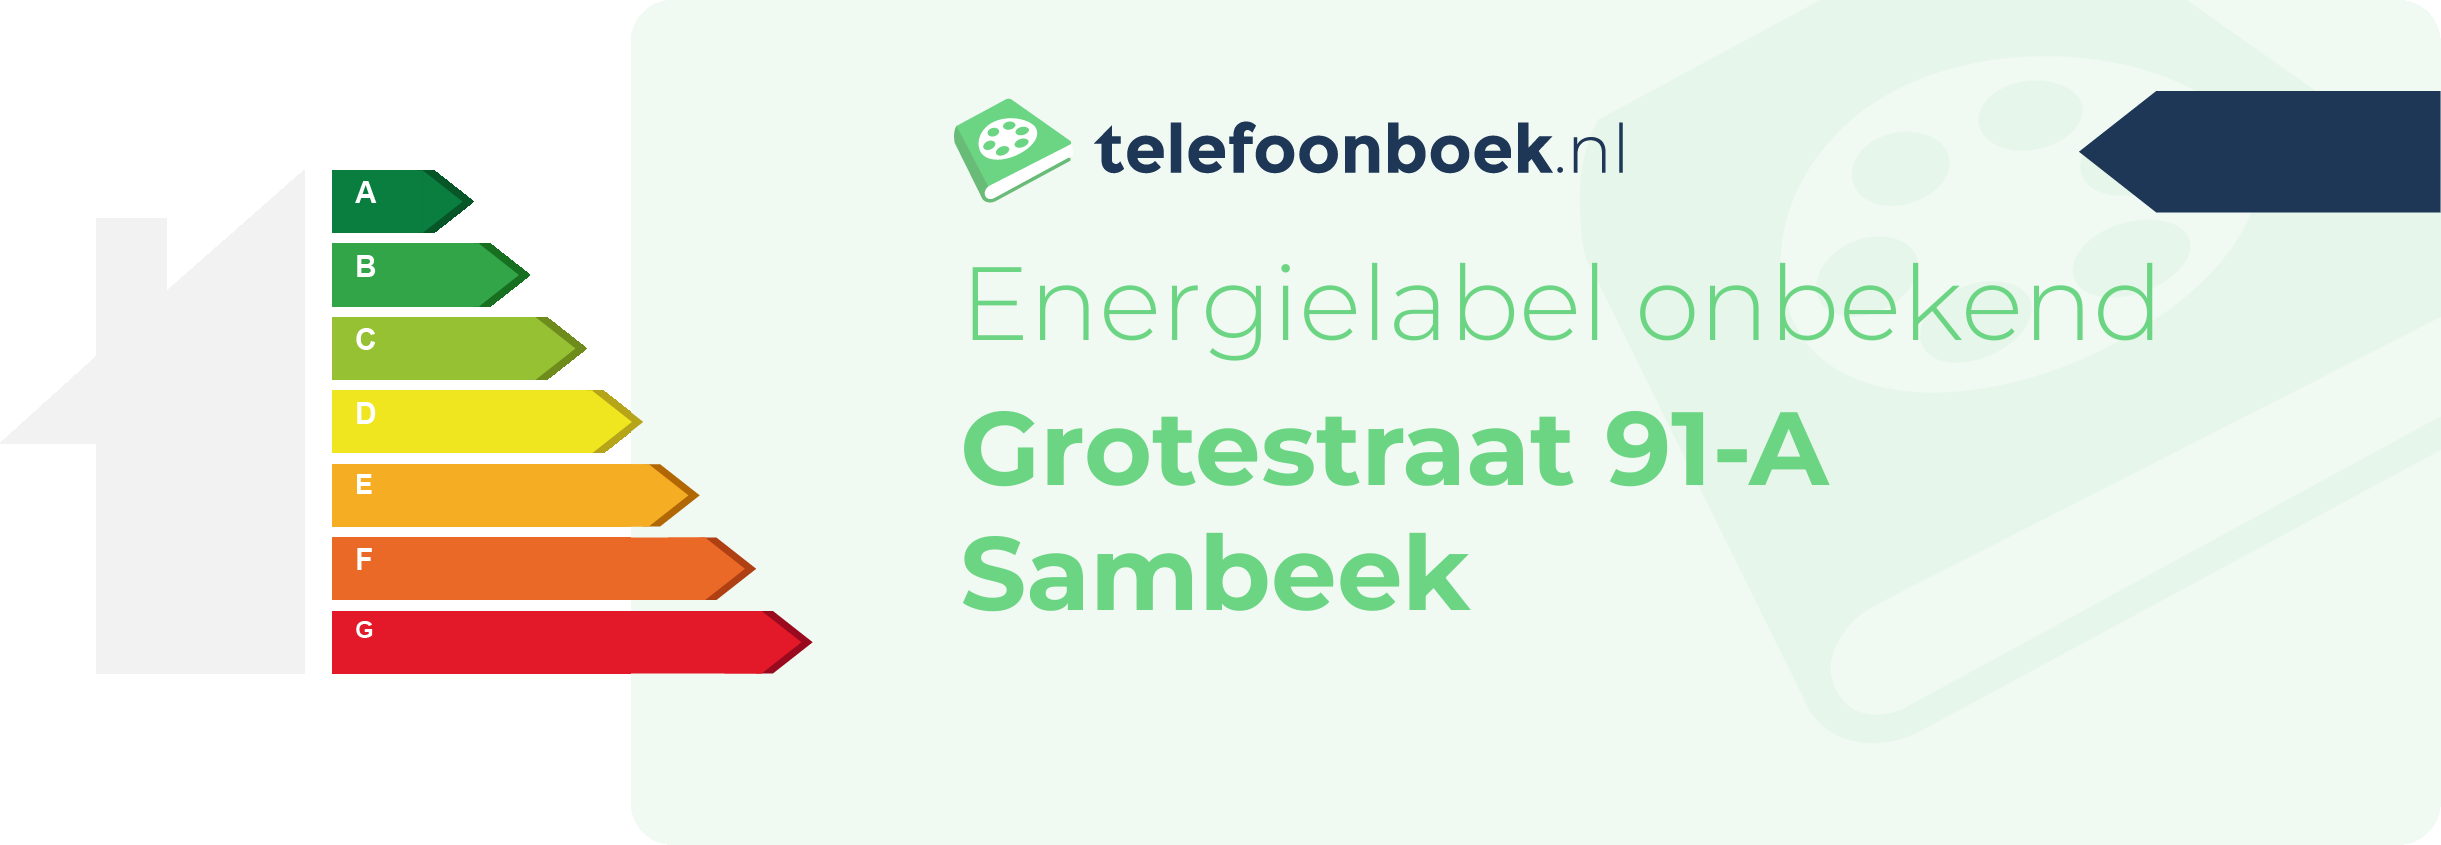 Energielabel Grotestraat 91-A Sambeek